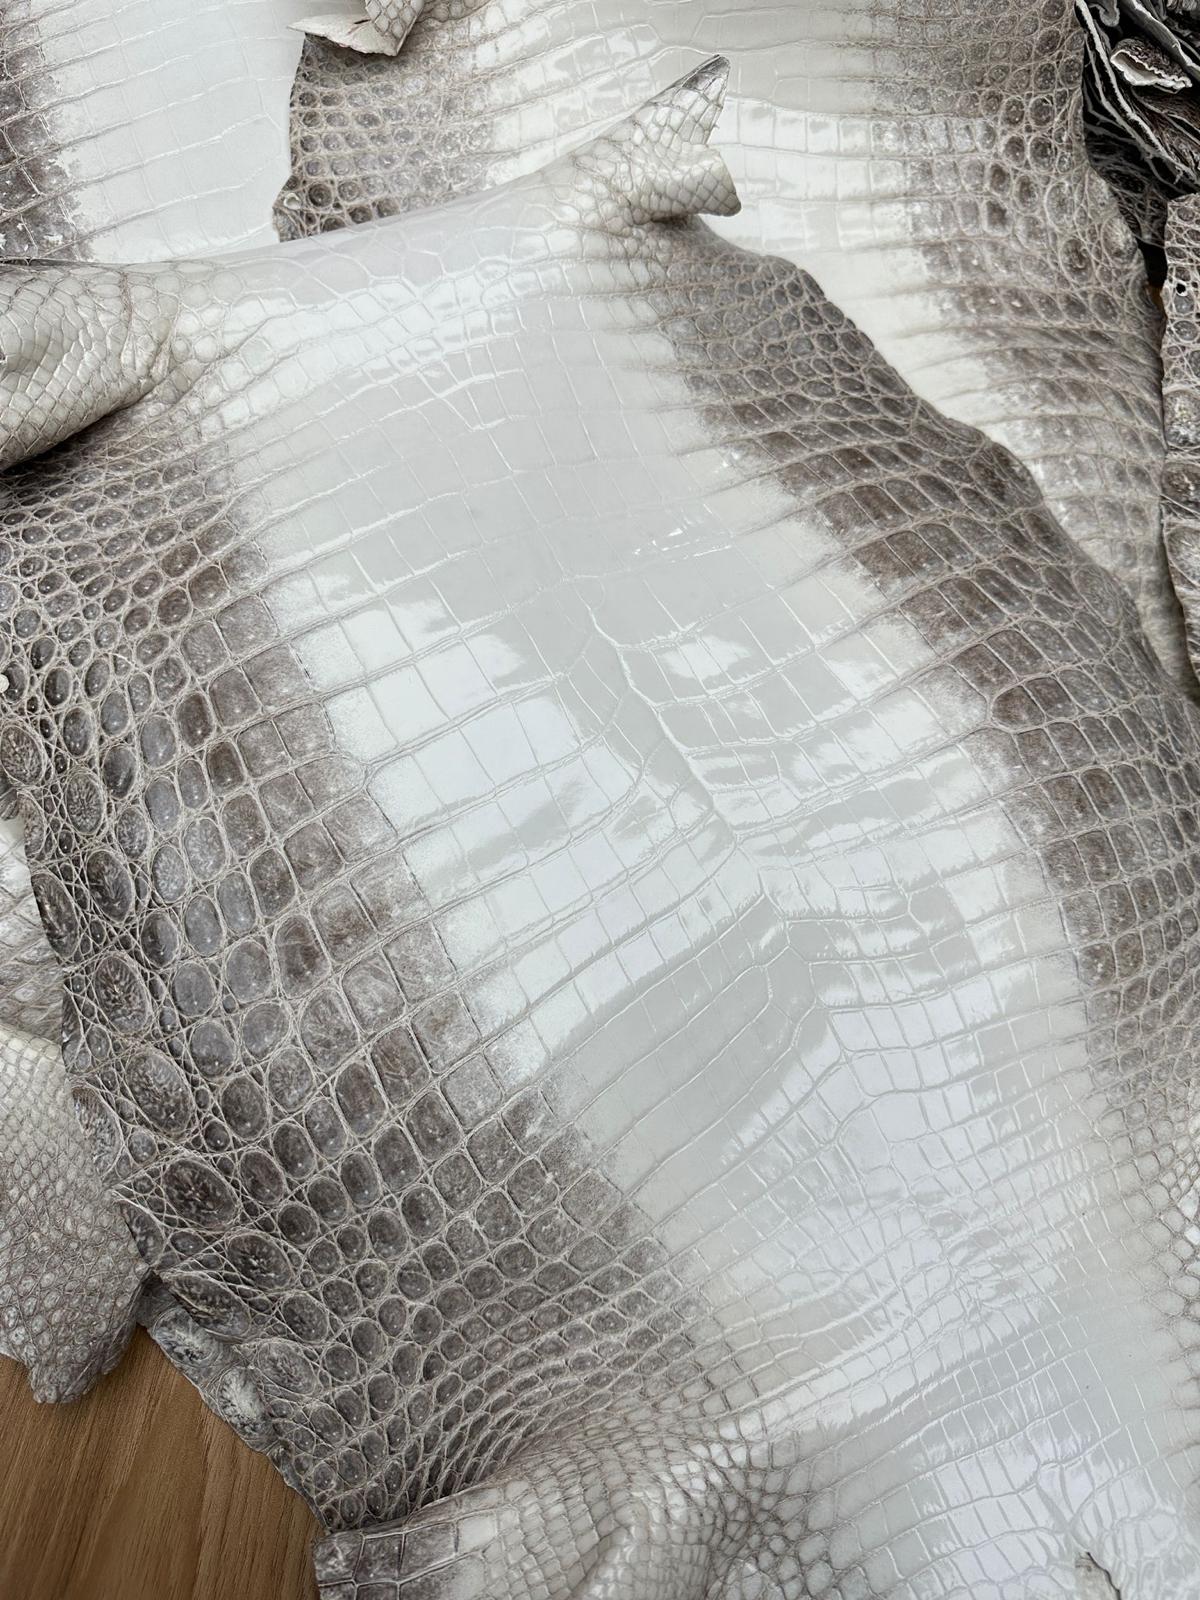 Himalayan Crocodile Glazed Finish - Sunny Exotic Leathers